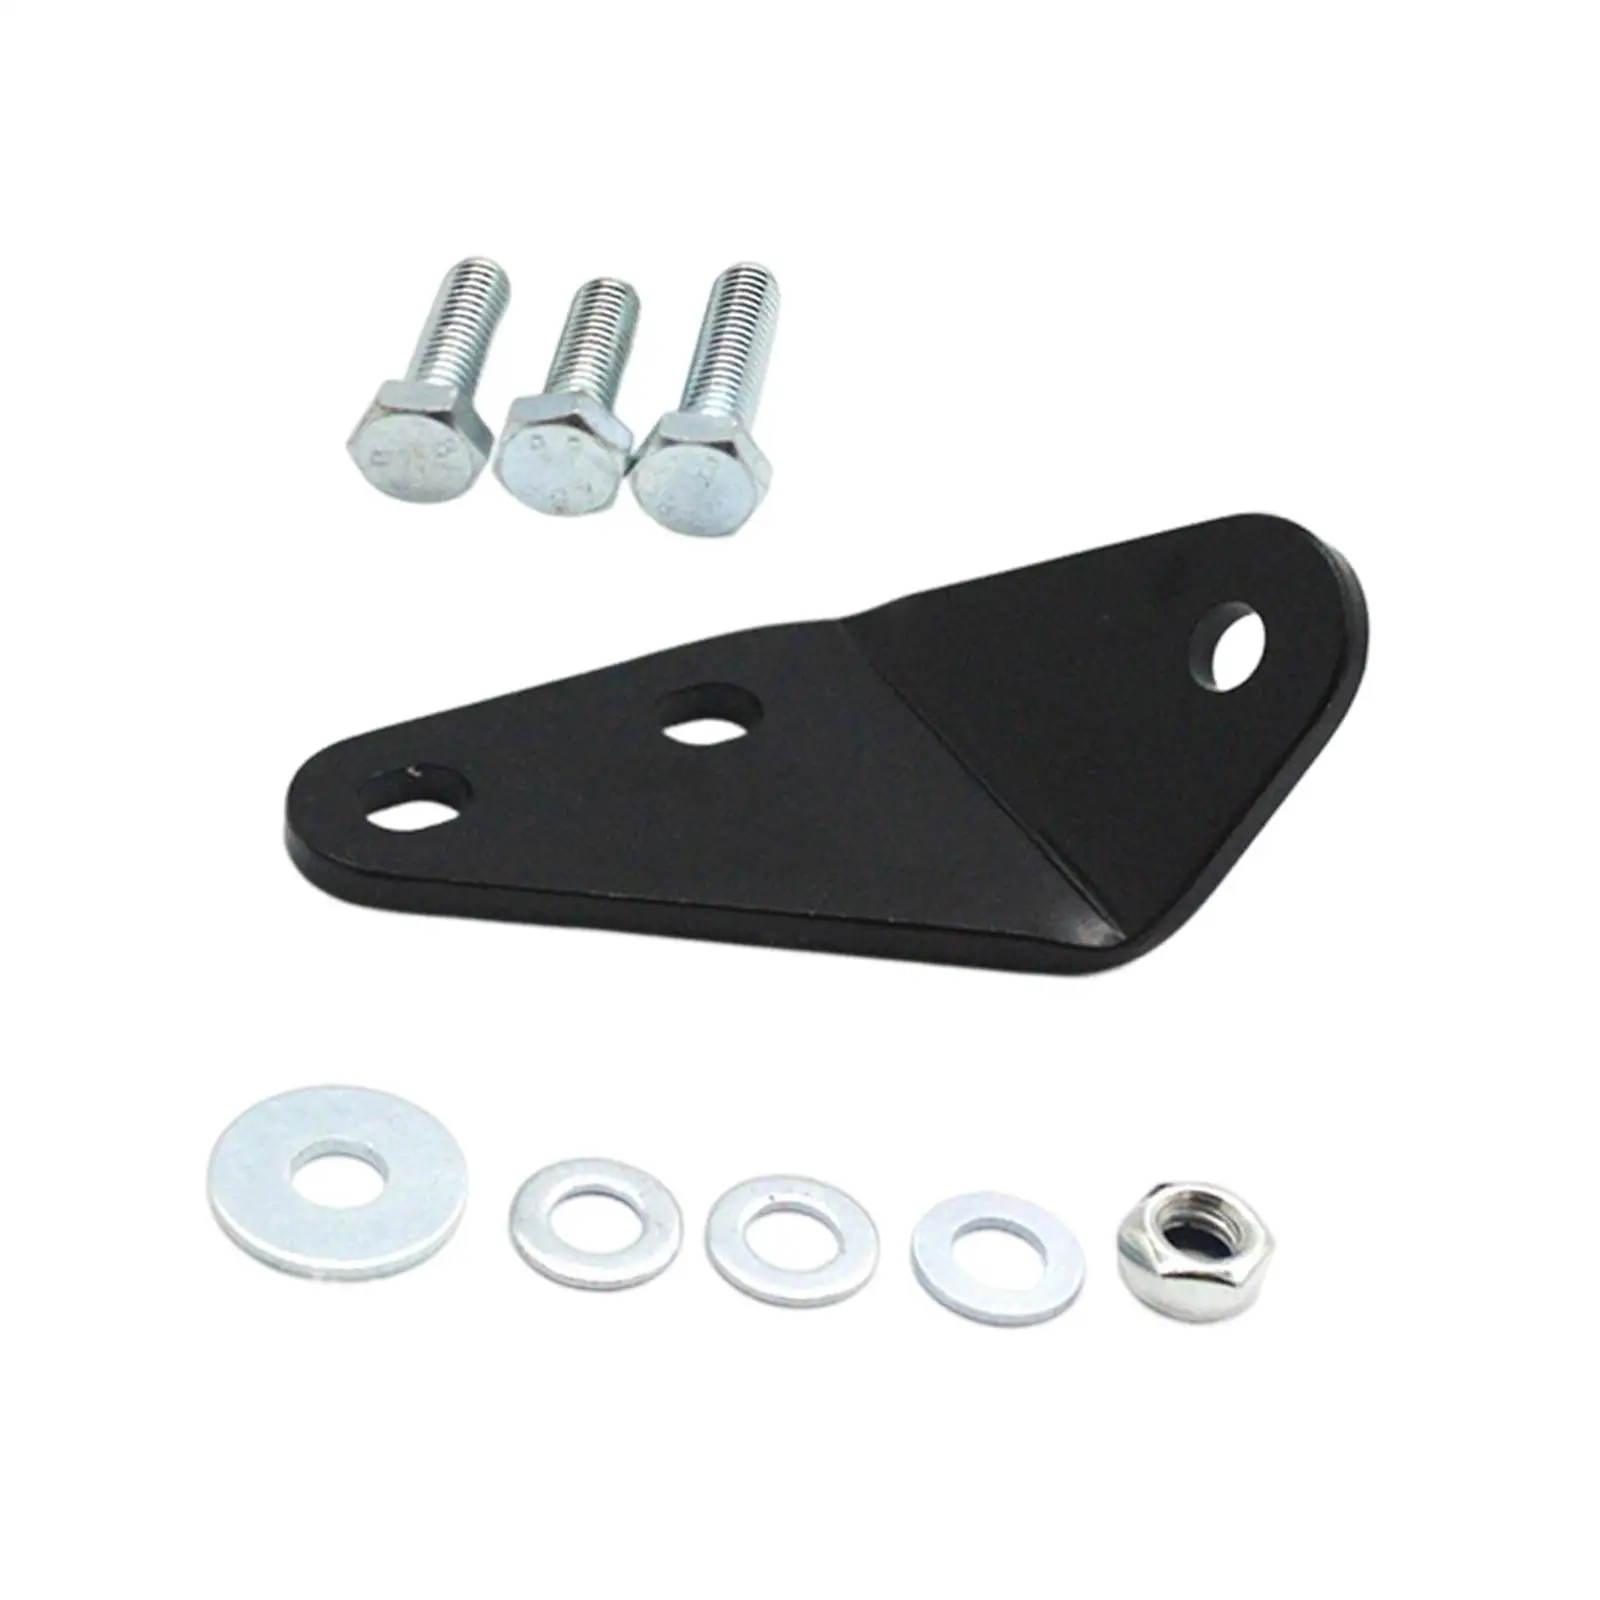 Clutch Pedal Repair Bracket Kit Replacement Parts Durable for VW T4 Transporter Multivan Caravelle Automotive Accessories